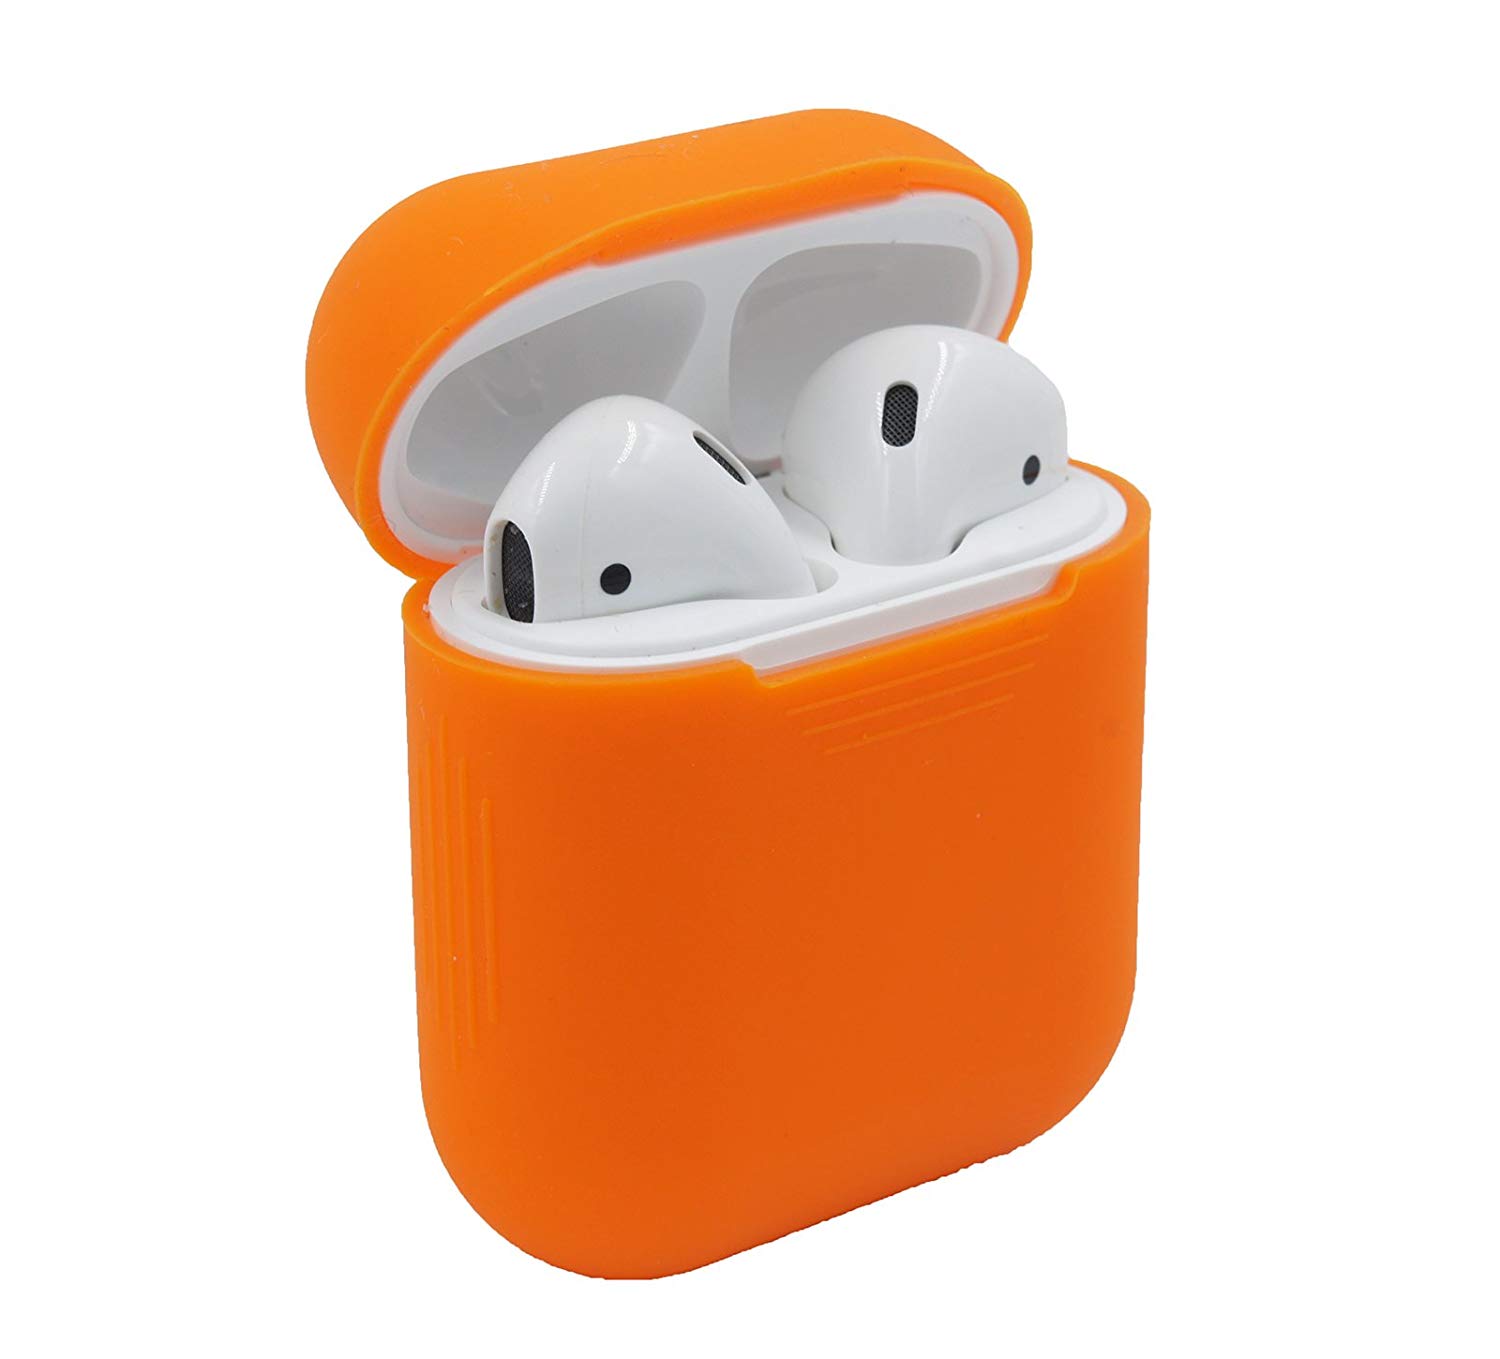 Bao case silicon cho tai nghe Apple Airpods / Earpods hiệu Hotcase (siêu mỏng, bảo vệ toàn diện, chống trầy, chống bụi) - Hàng chính hãng